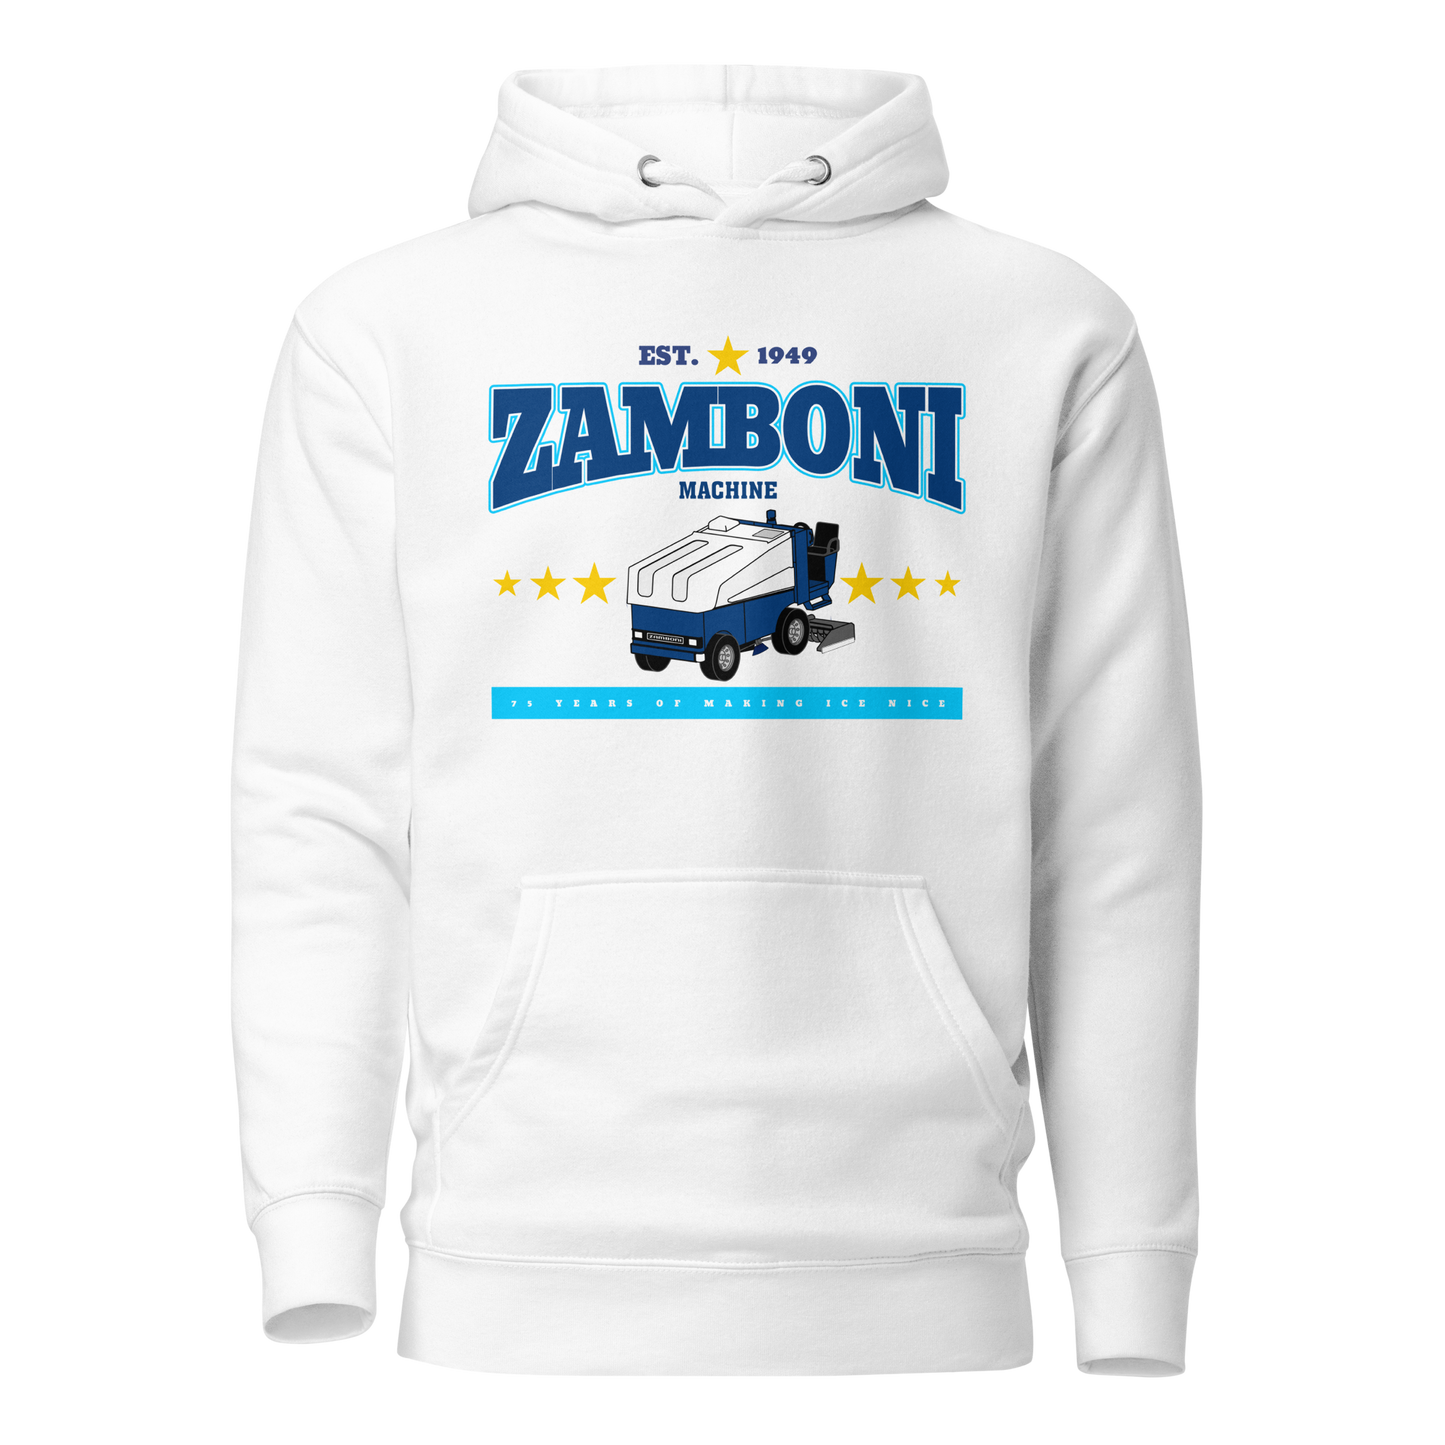 Zamboni Since 1949 Hoodie